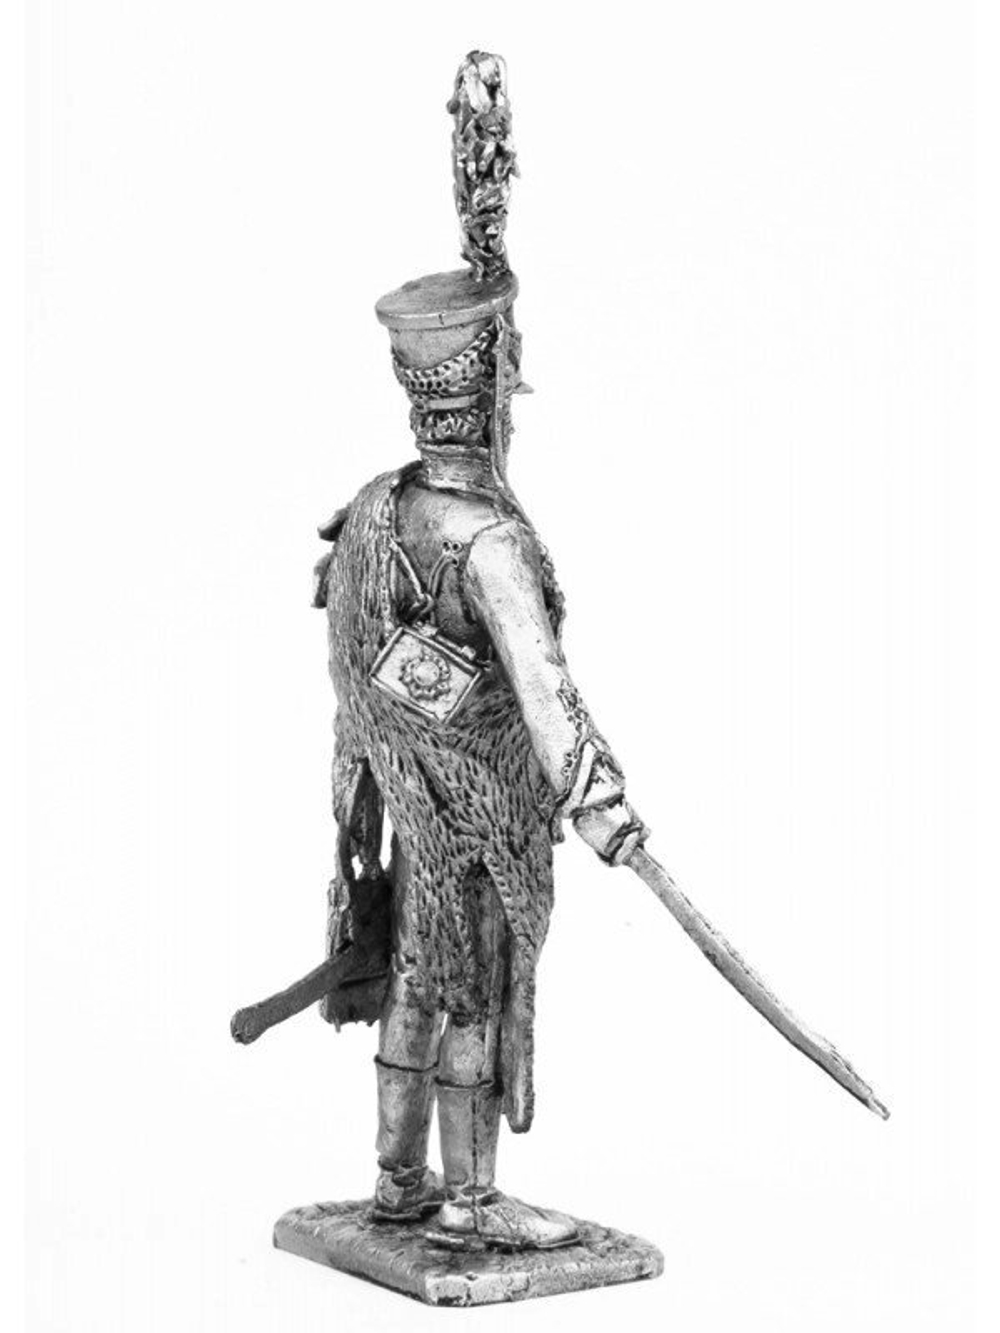 Оловянный солдатик Обер офицер Лейб гвардии гусарского полка в накидке барс 1809-1810 год